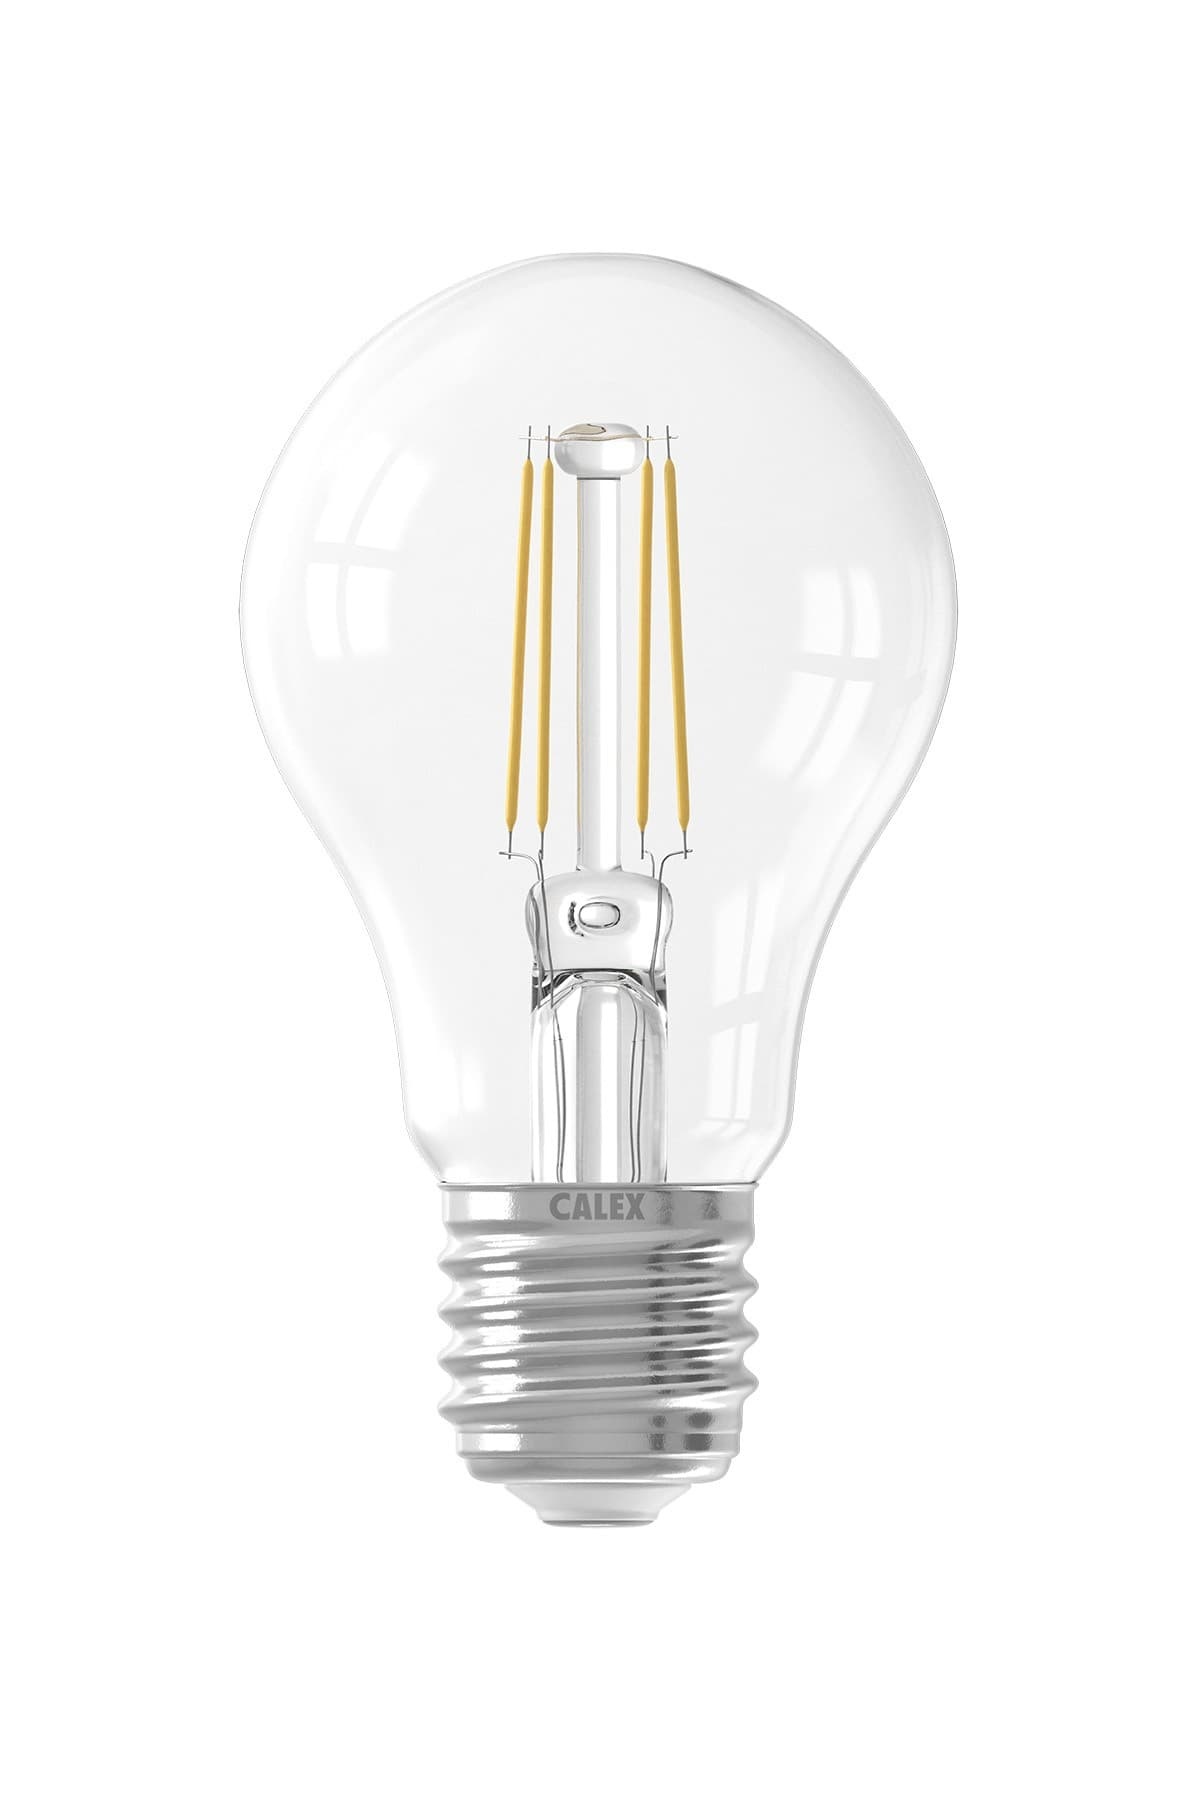 standaardlamp Calex helder dimbaar (A60 Ø60mm E27 - Kynda Light